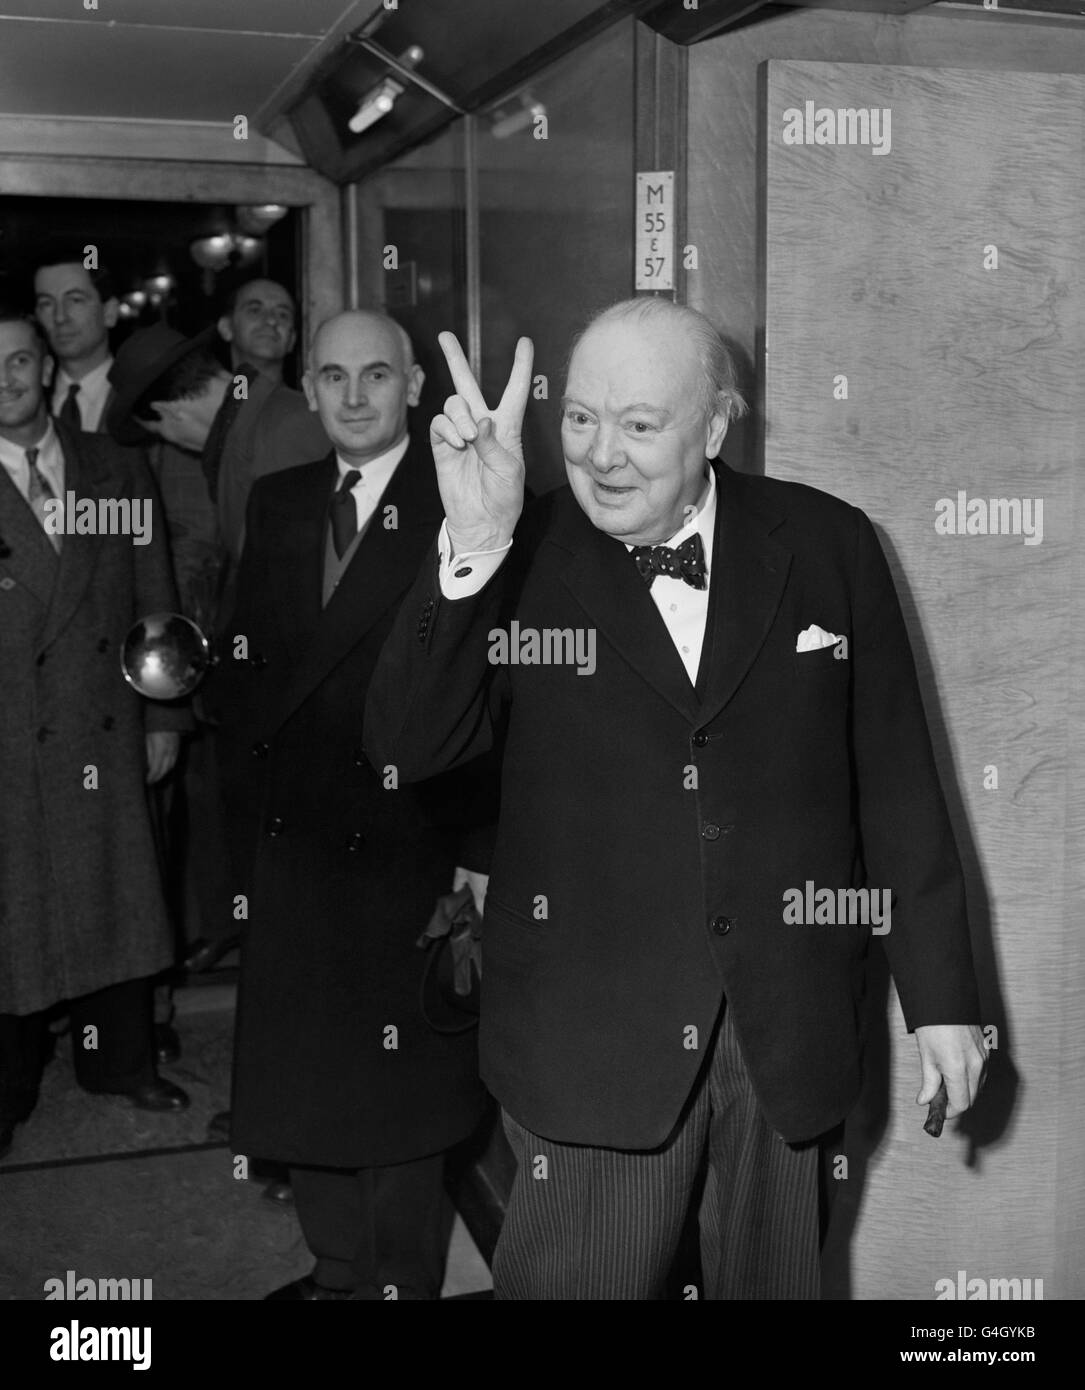 Le Premier ministre Winston Churchill donne un signe de « victoire » à bord du paquebot de Cunard RMS Queen Mary, sur lequel il naviguait à New York Banque D'Images